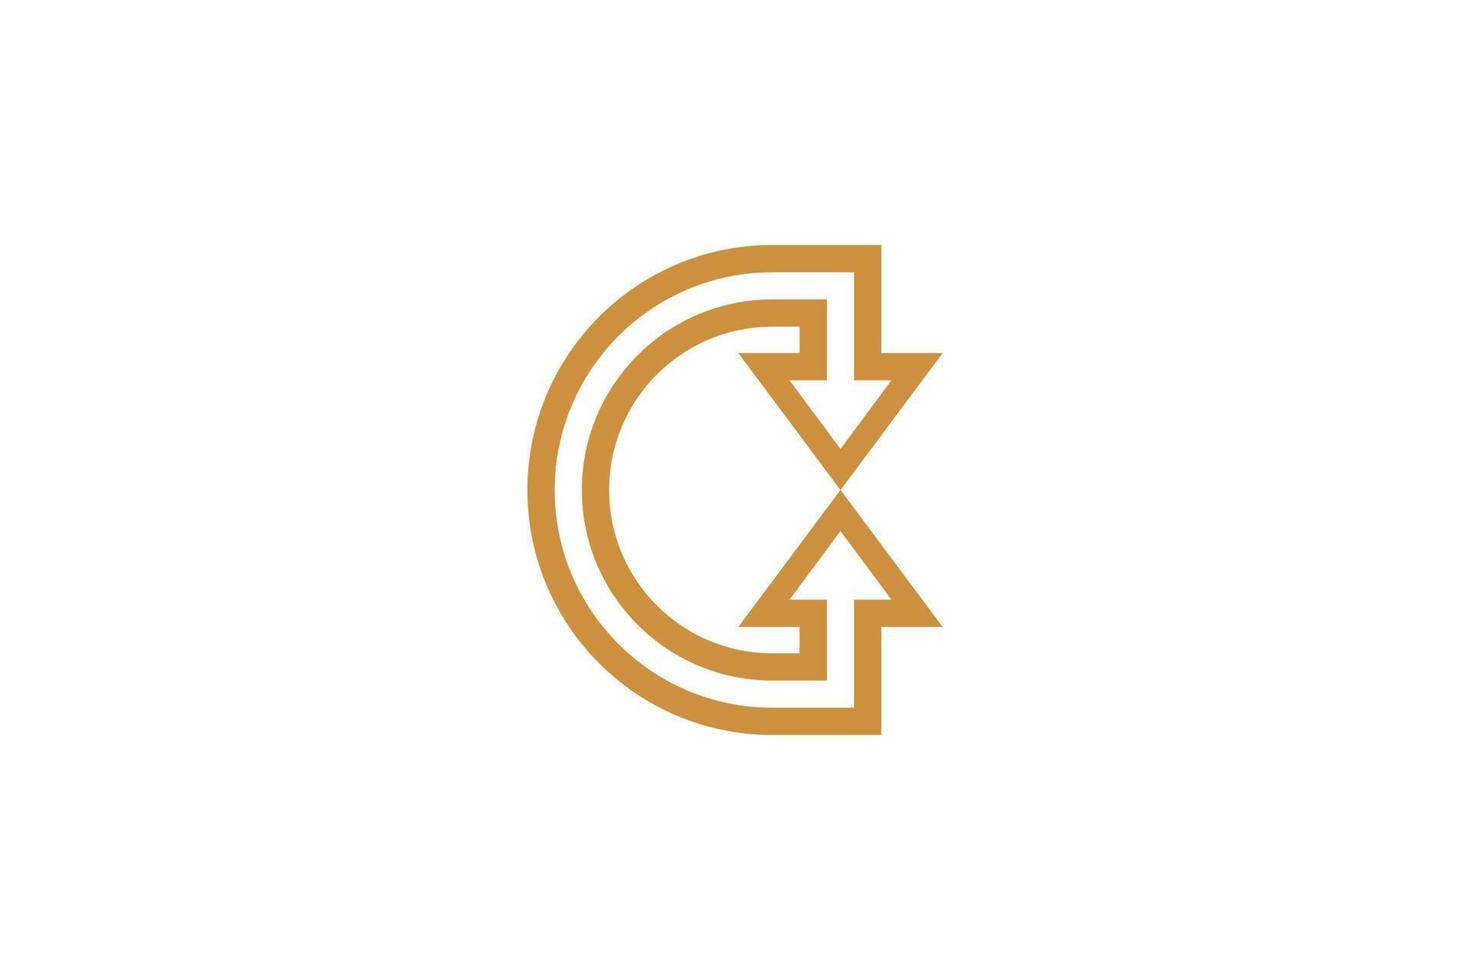 de brief c monoline logo vector